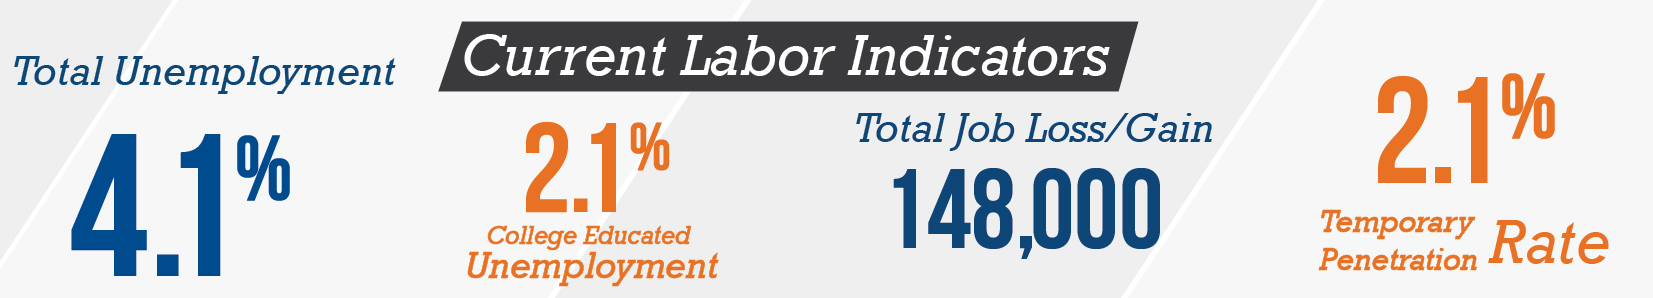 Current labor indicators